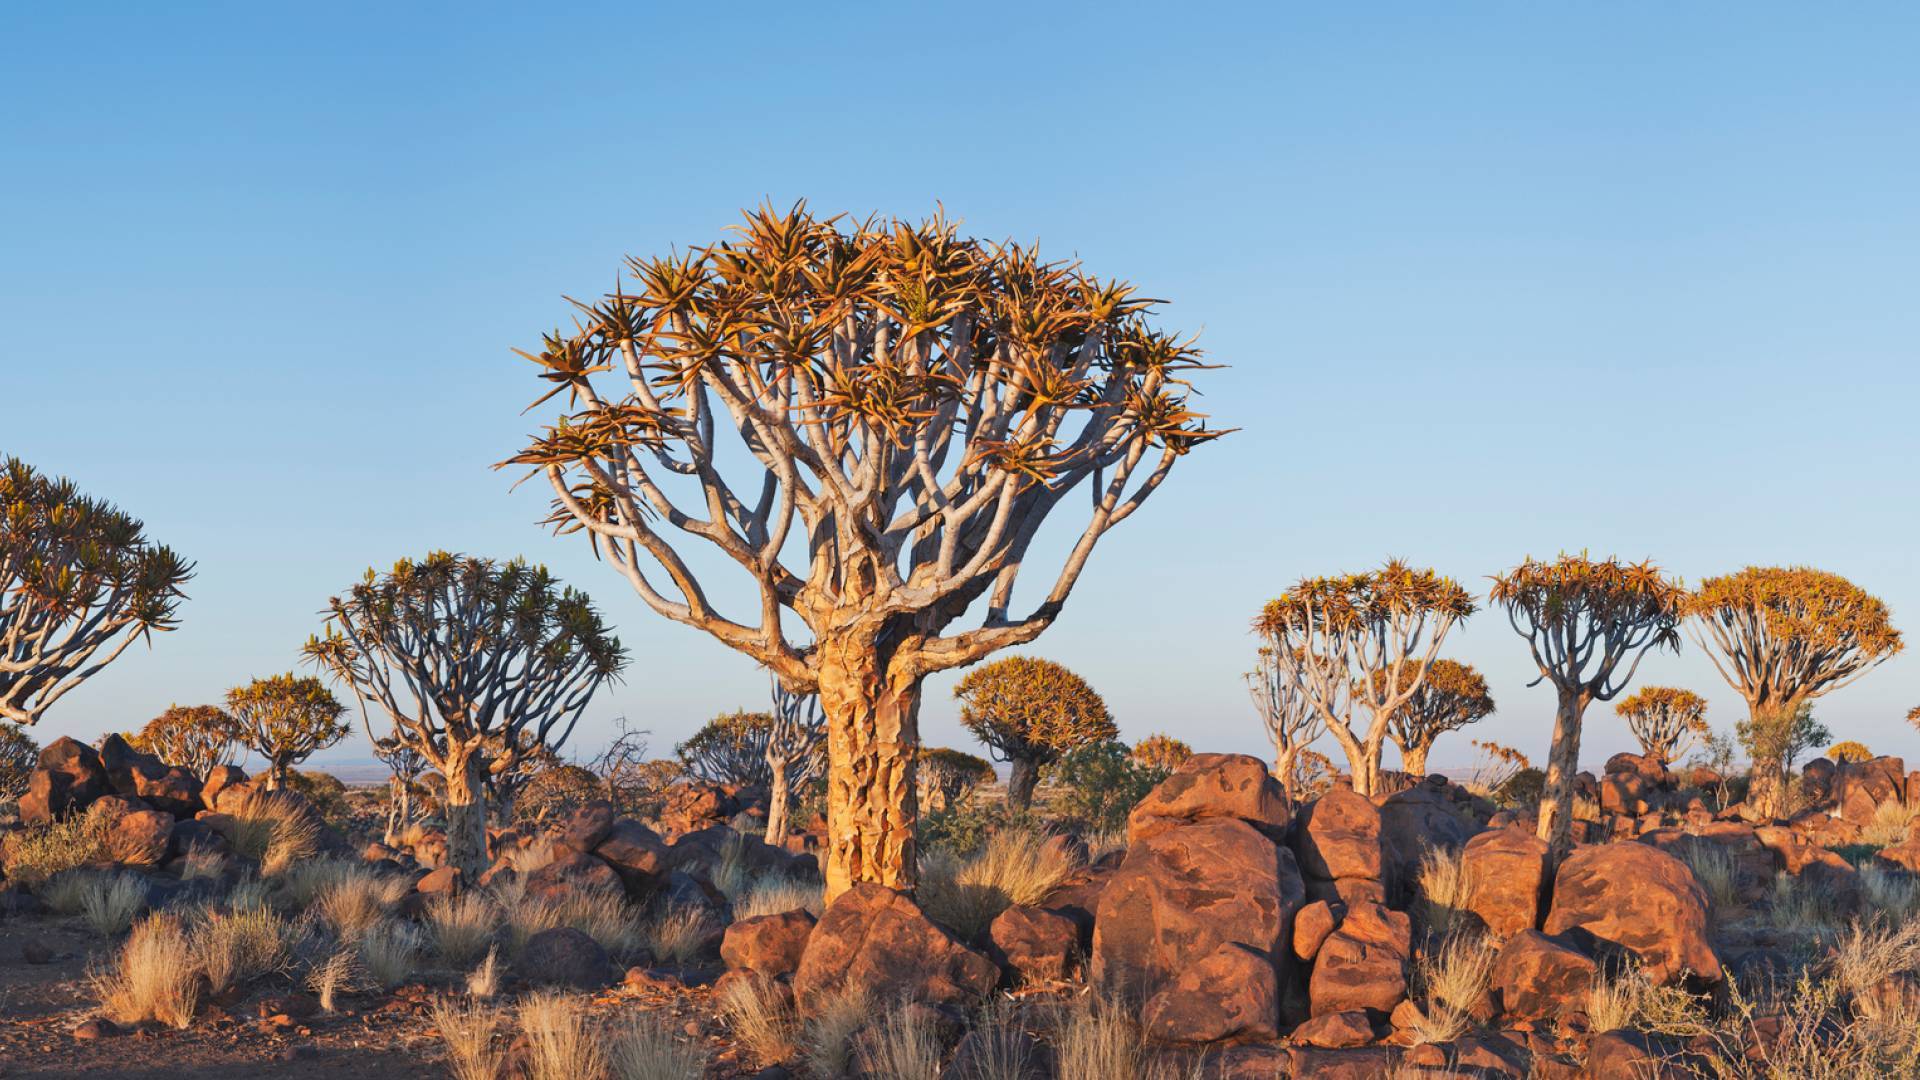 Carquois arbres dans la partie sud de la Namibie